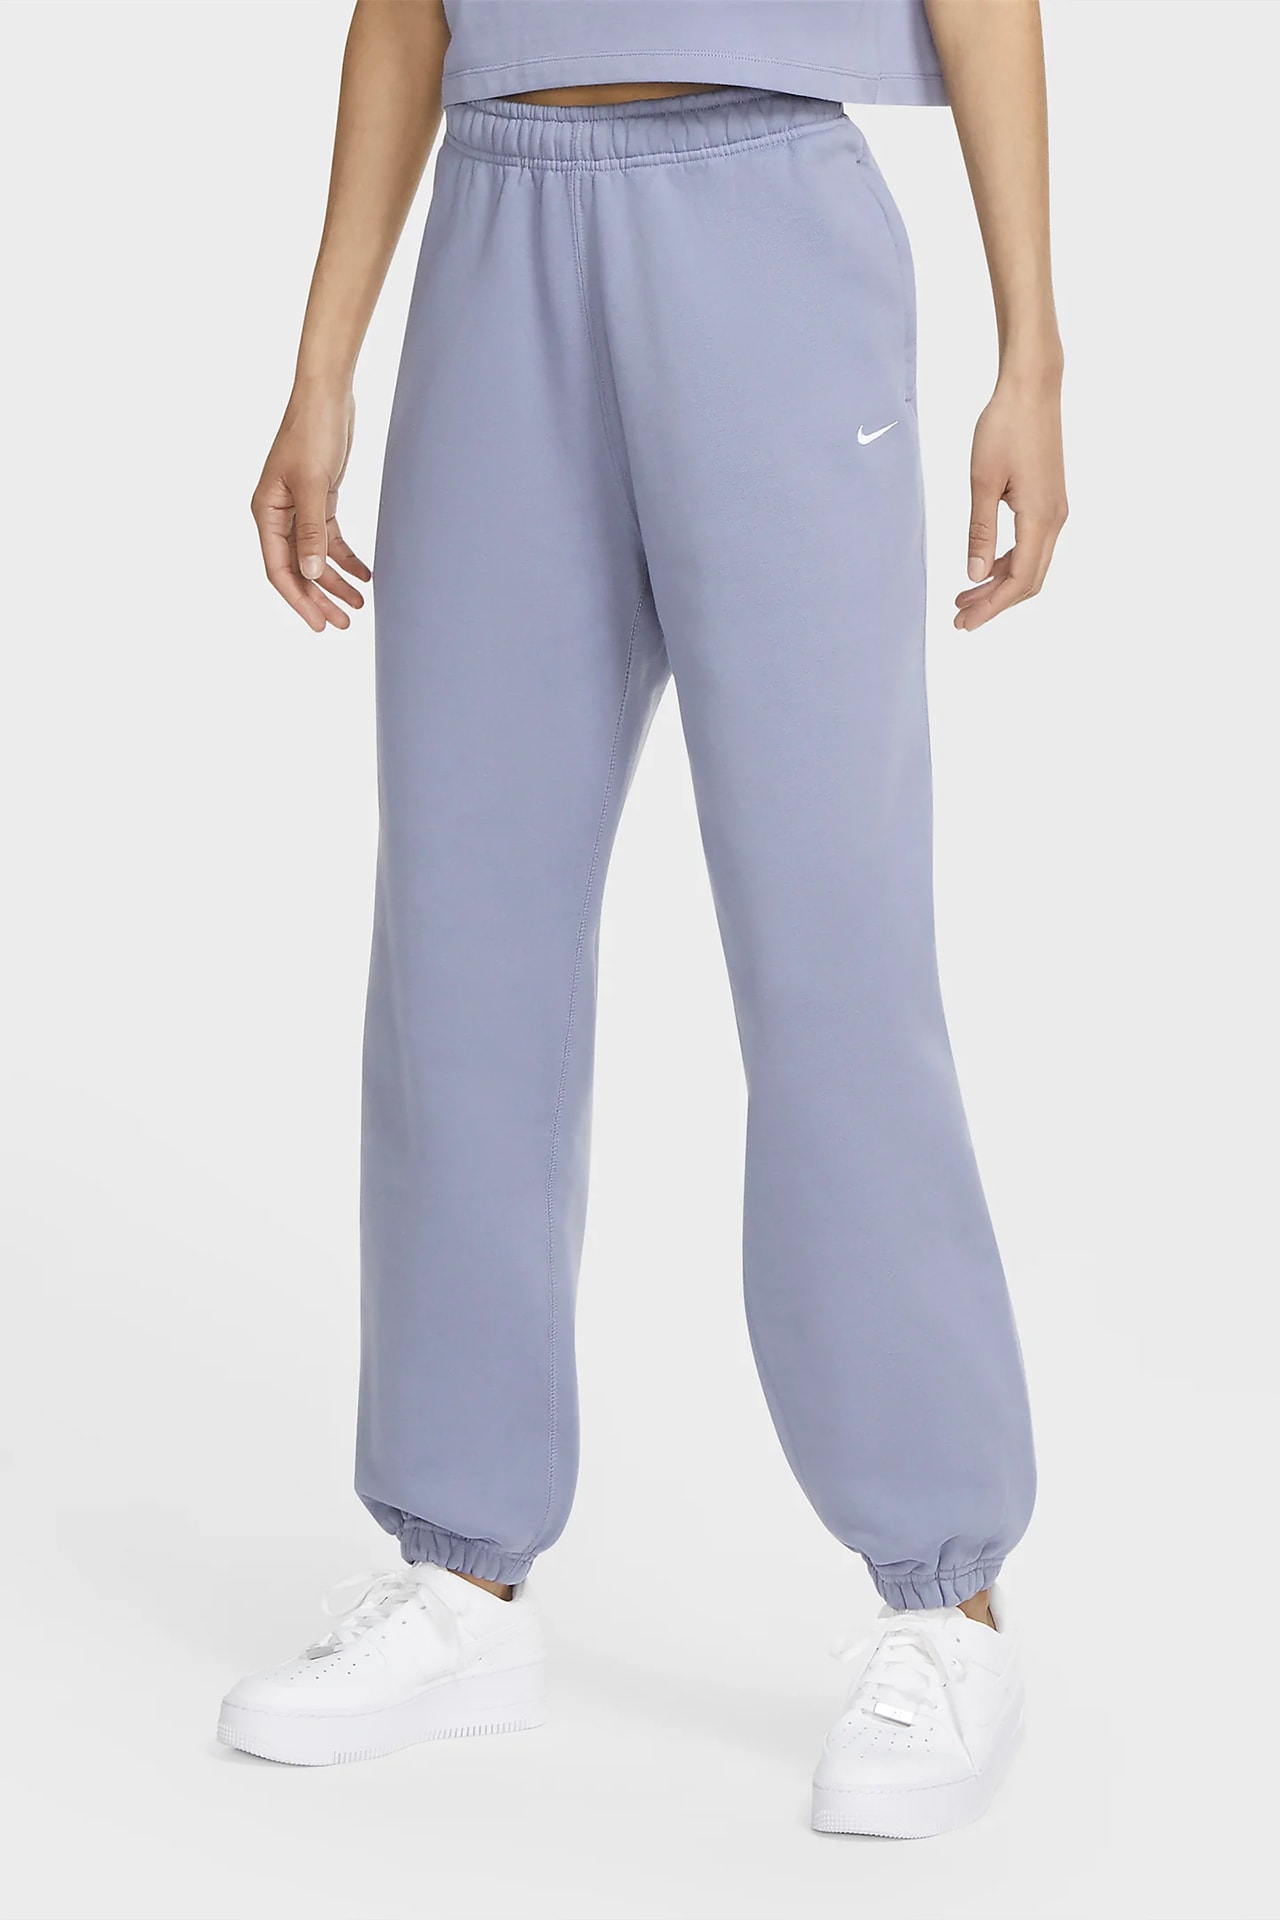 Nike Women Sportswear Fleece Wide-Leg Sweatpants in Grey, Diff